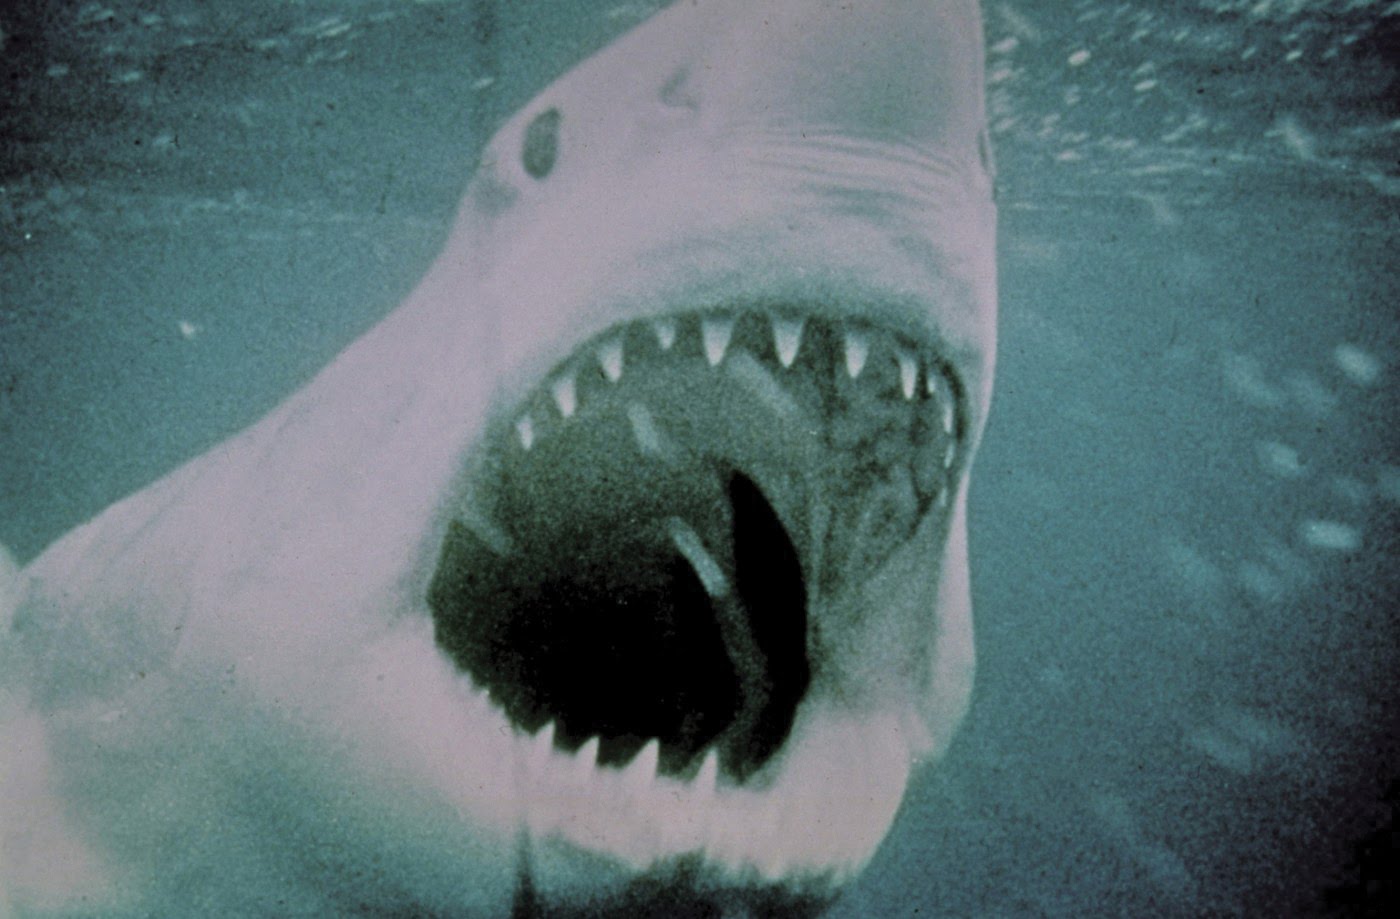 Movie Memorabilia Emporium: Jaws (1975) Promotional photos - High ...